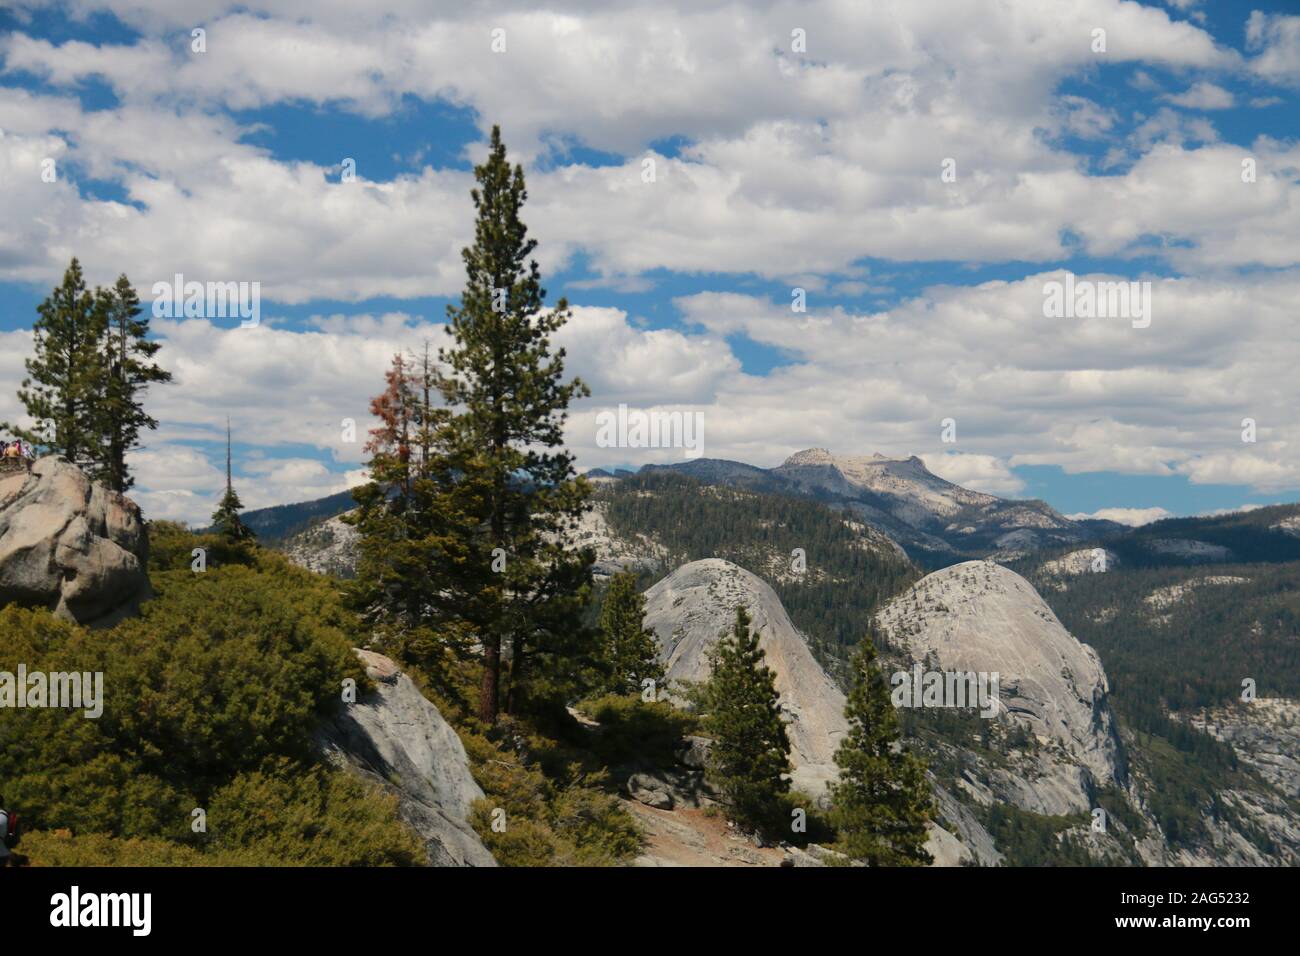 Yosemite, California Stock Photo